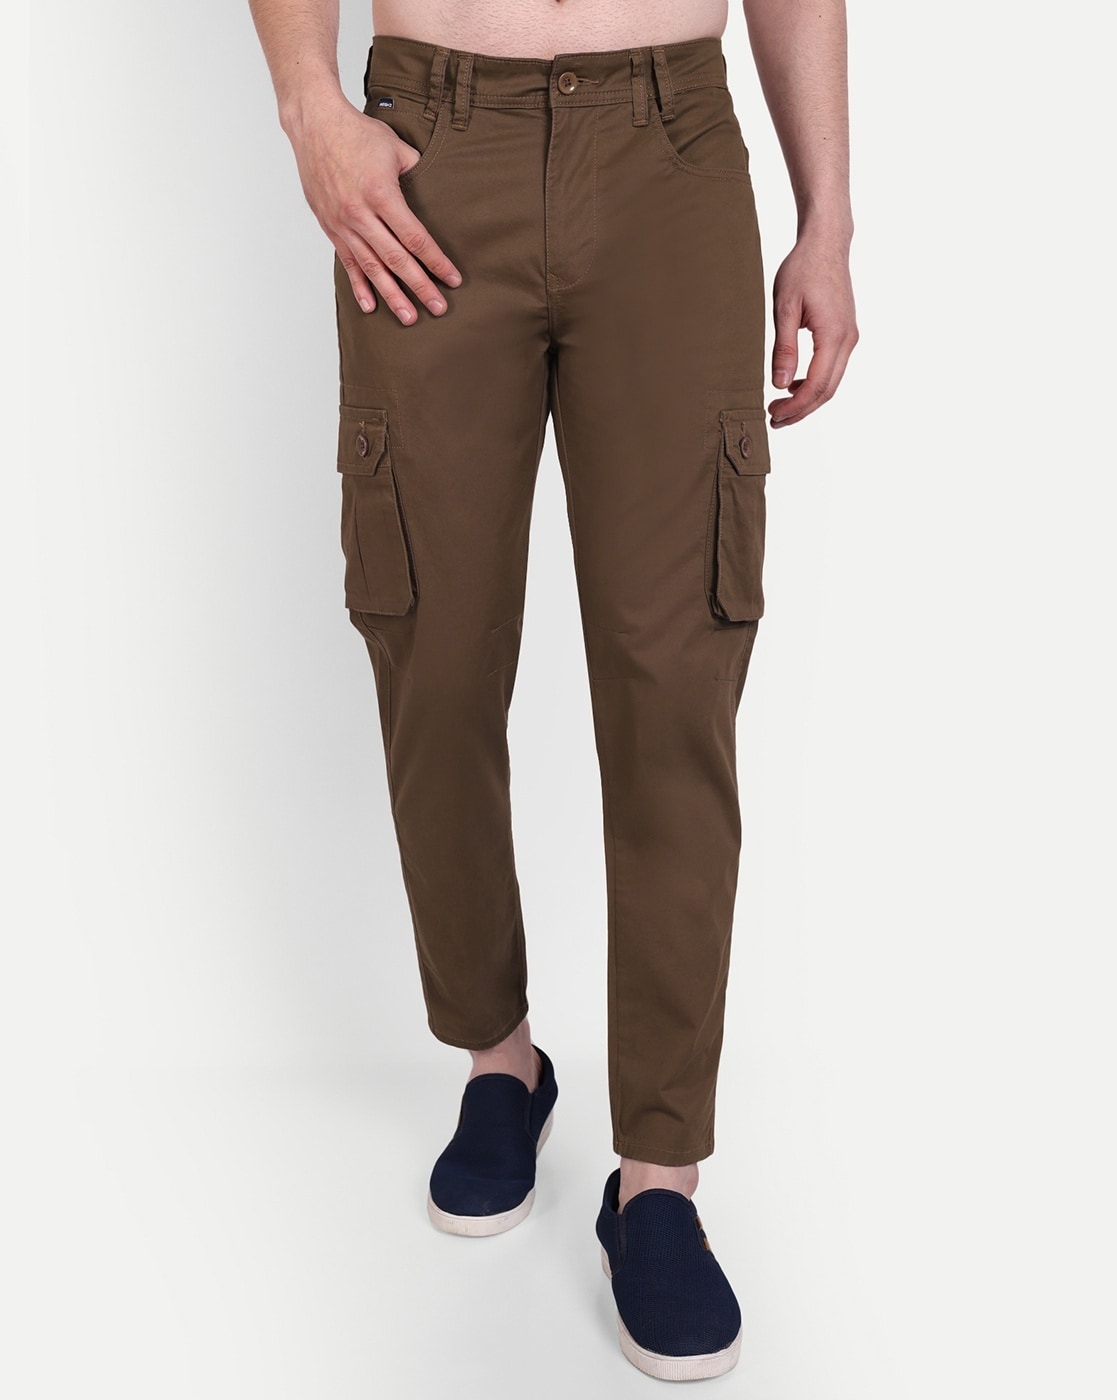 Buy Men Casual Cargo Jogger, Men's Regular Cargo Pants, Men 's Solid Full  Length Cargo Pants. Beige at Amazon.in